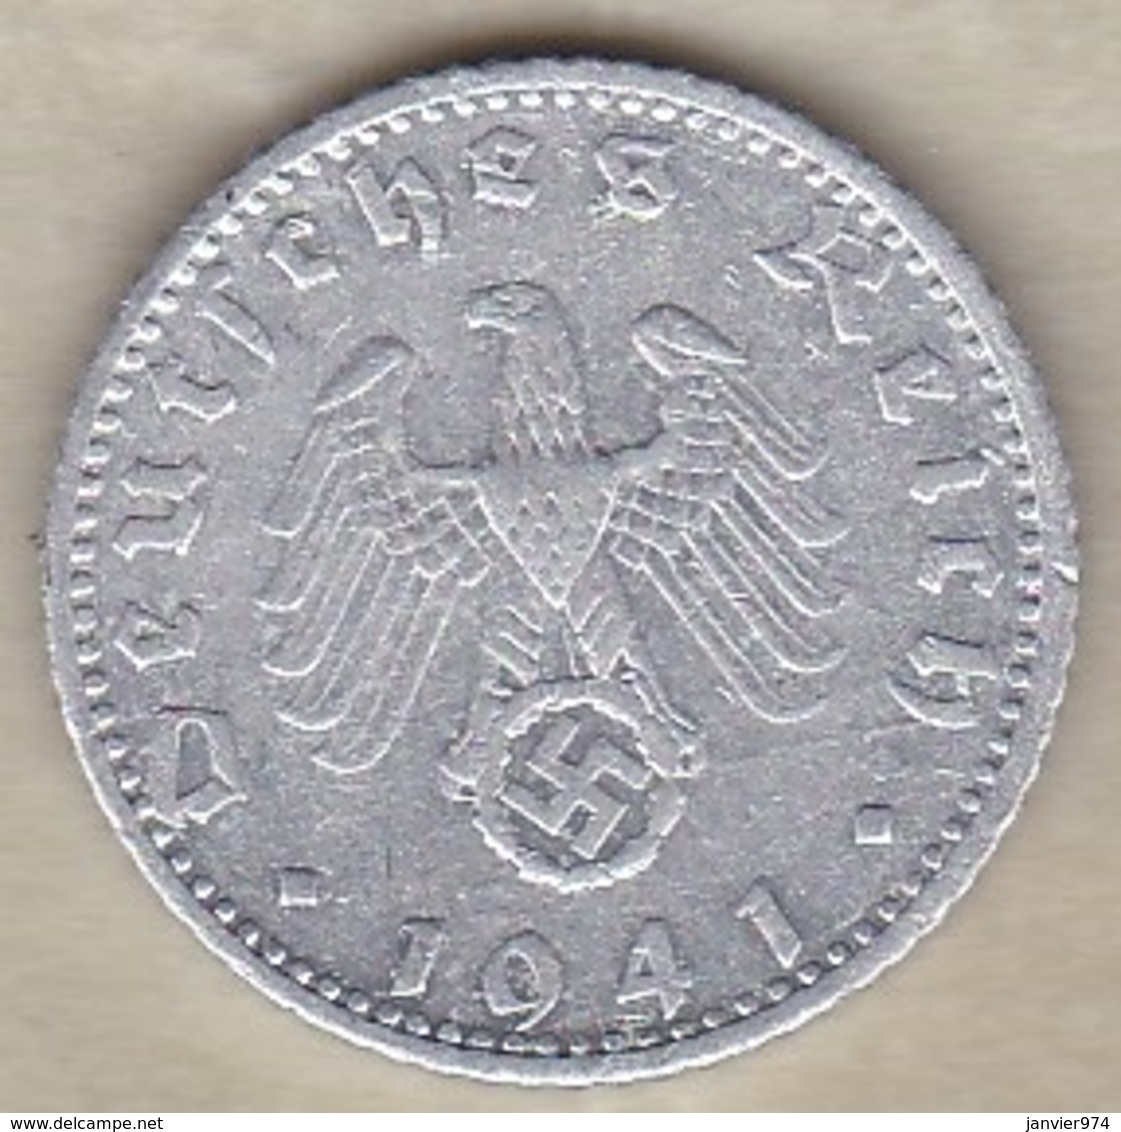 50 Reichspfennig 1941 F (STUTGART) Aluminium - 50 Reichspfennig